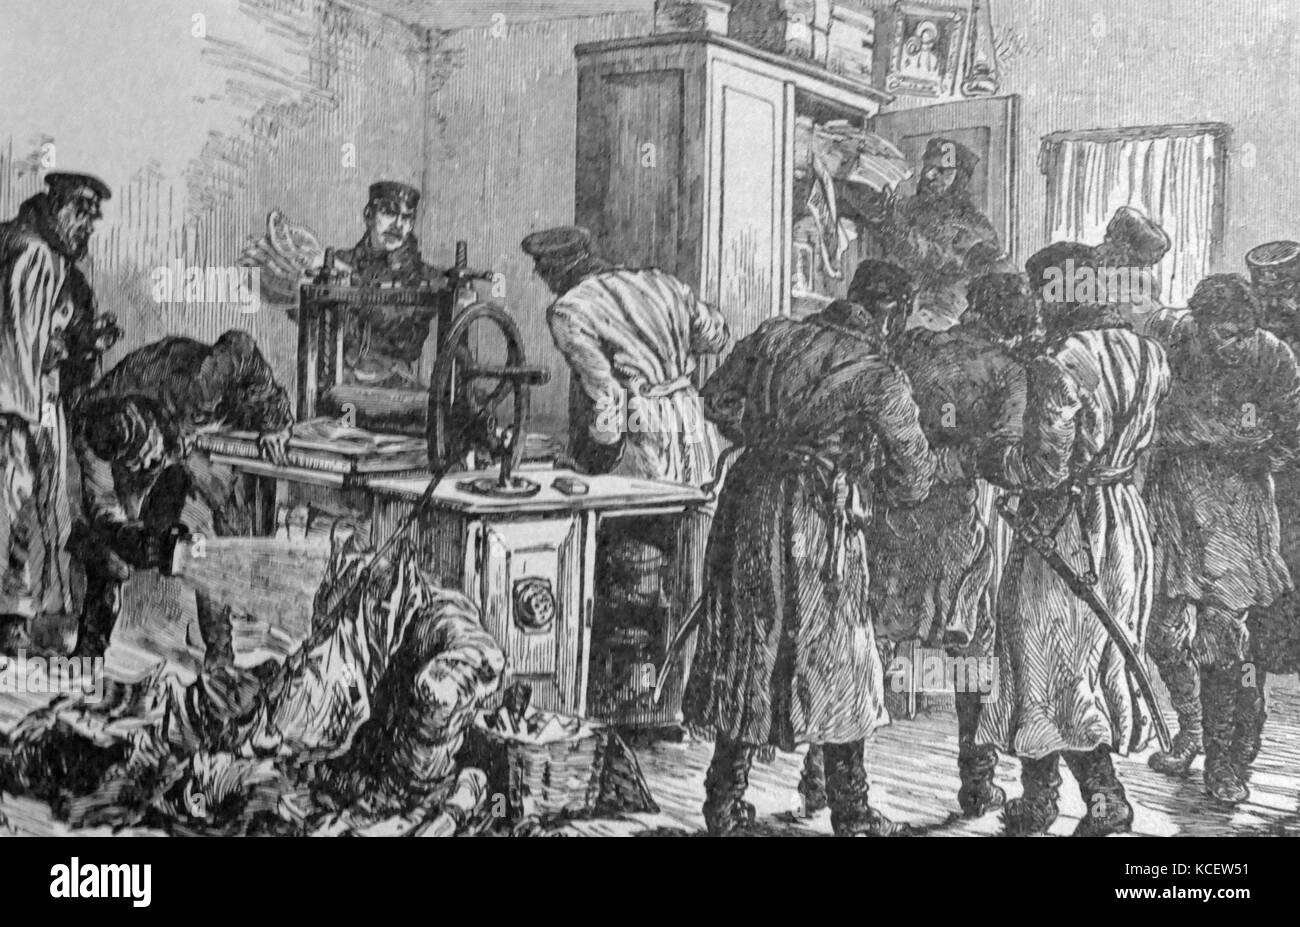 La police tsariste et les forces de sécurité, les maisons d'opposants politiques raid à St Petersburg, Russie. vers 1905 Banque D'Images